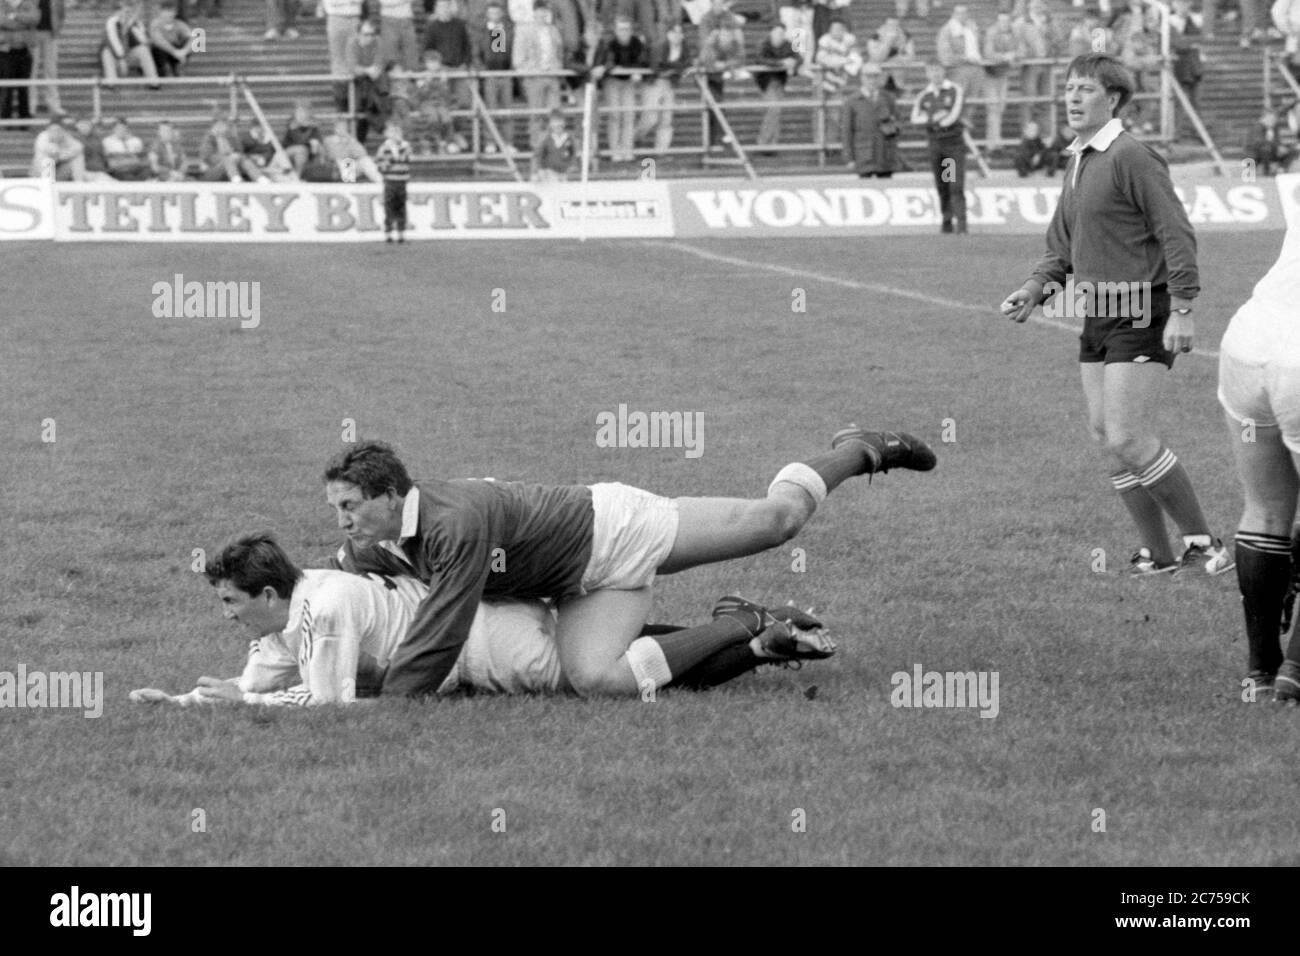 Der Scrum Half Mike Griffiths von Llanelli RFC tagt seinen Gegenspieler Robert Jones vom Swansea RFC während eines Spiels am 14. Oktober 1989 auf dem St. Helen's Rugby and Cricket Ground, Swansea. Stockfoto